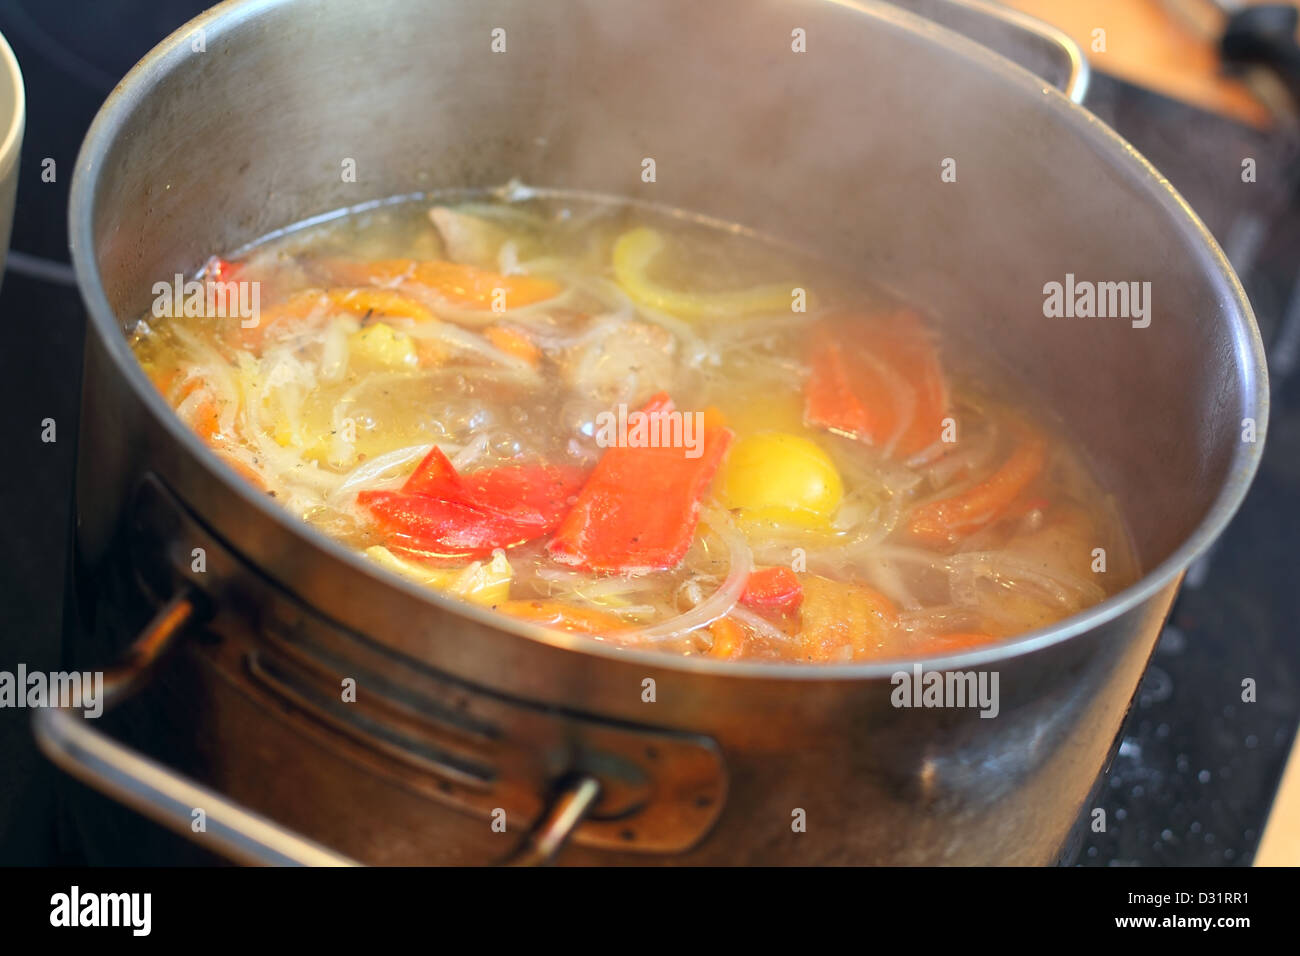 Можно горячий суп ставить в холодильник. Горячий суп. Суп в кастрюле. Горячий суп с паром. Кастрюля с супом картинка.